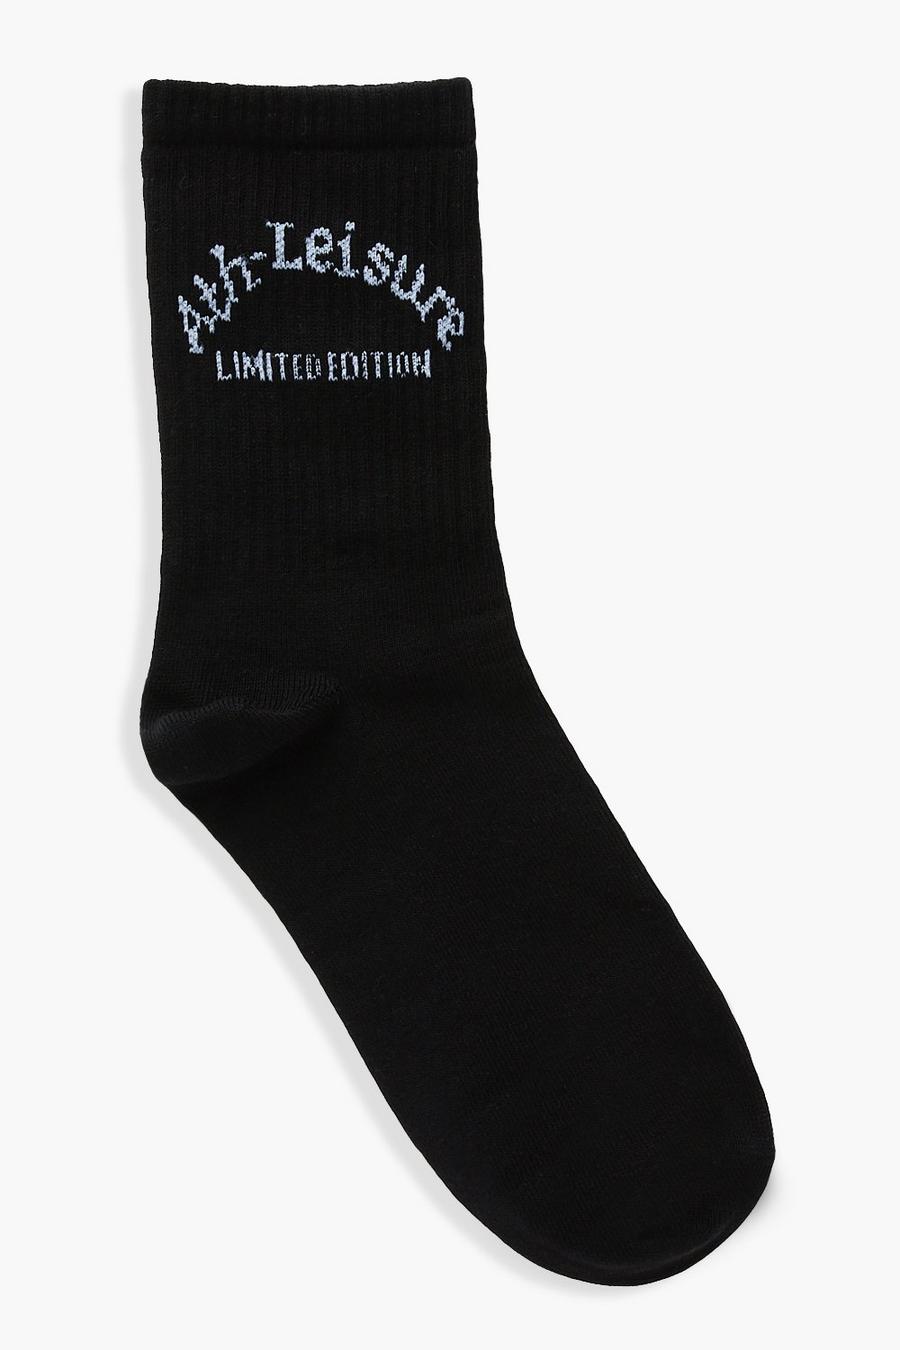 Black Ath-leisure Slogan Sport Socks image number 1